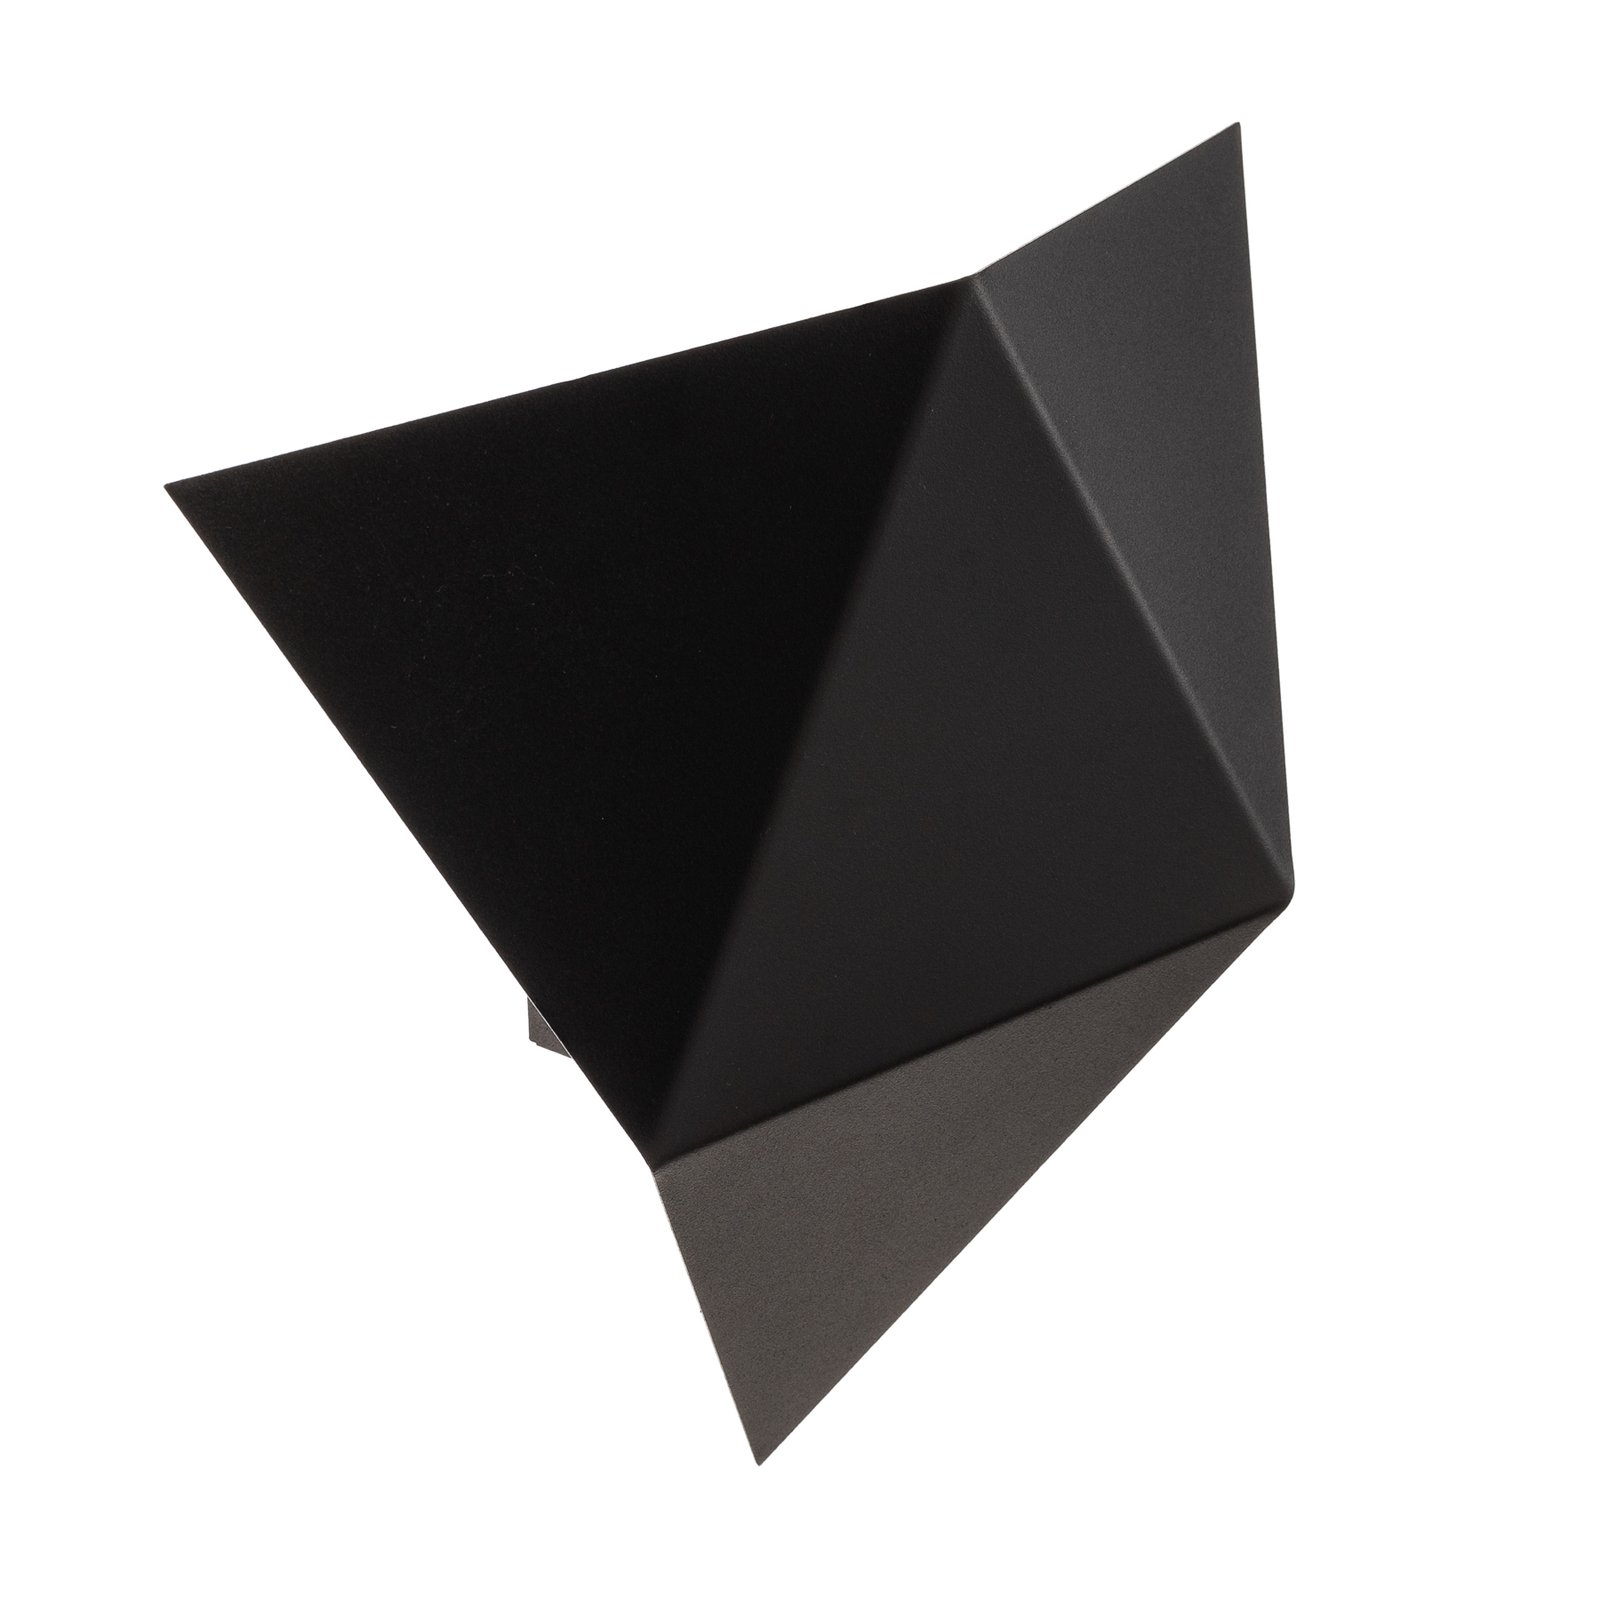 Stenska svetilka Shield v oglati obliki, črna